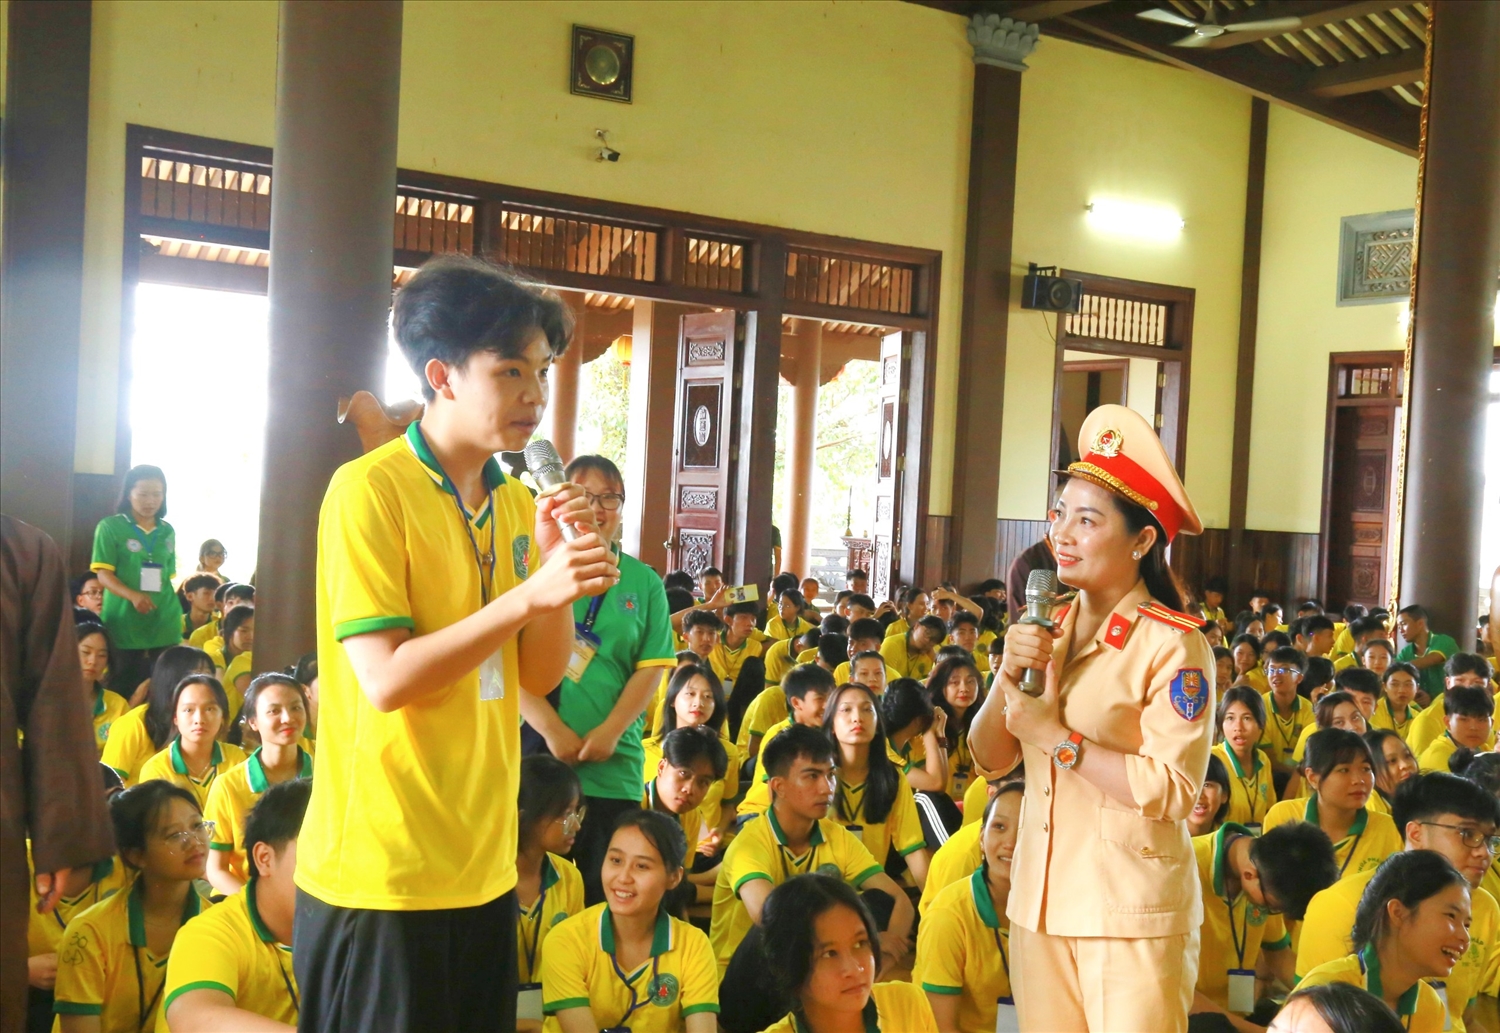 Tuyên truyền Luật giao thông đường bộ cho 500 thanh thiếu niên khóa tu mùa hè tại chùa Pháp Hoa, thành phố Gia Nghĩa